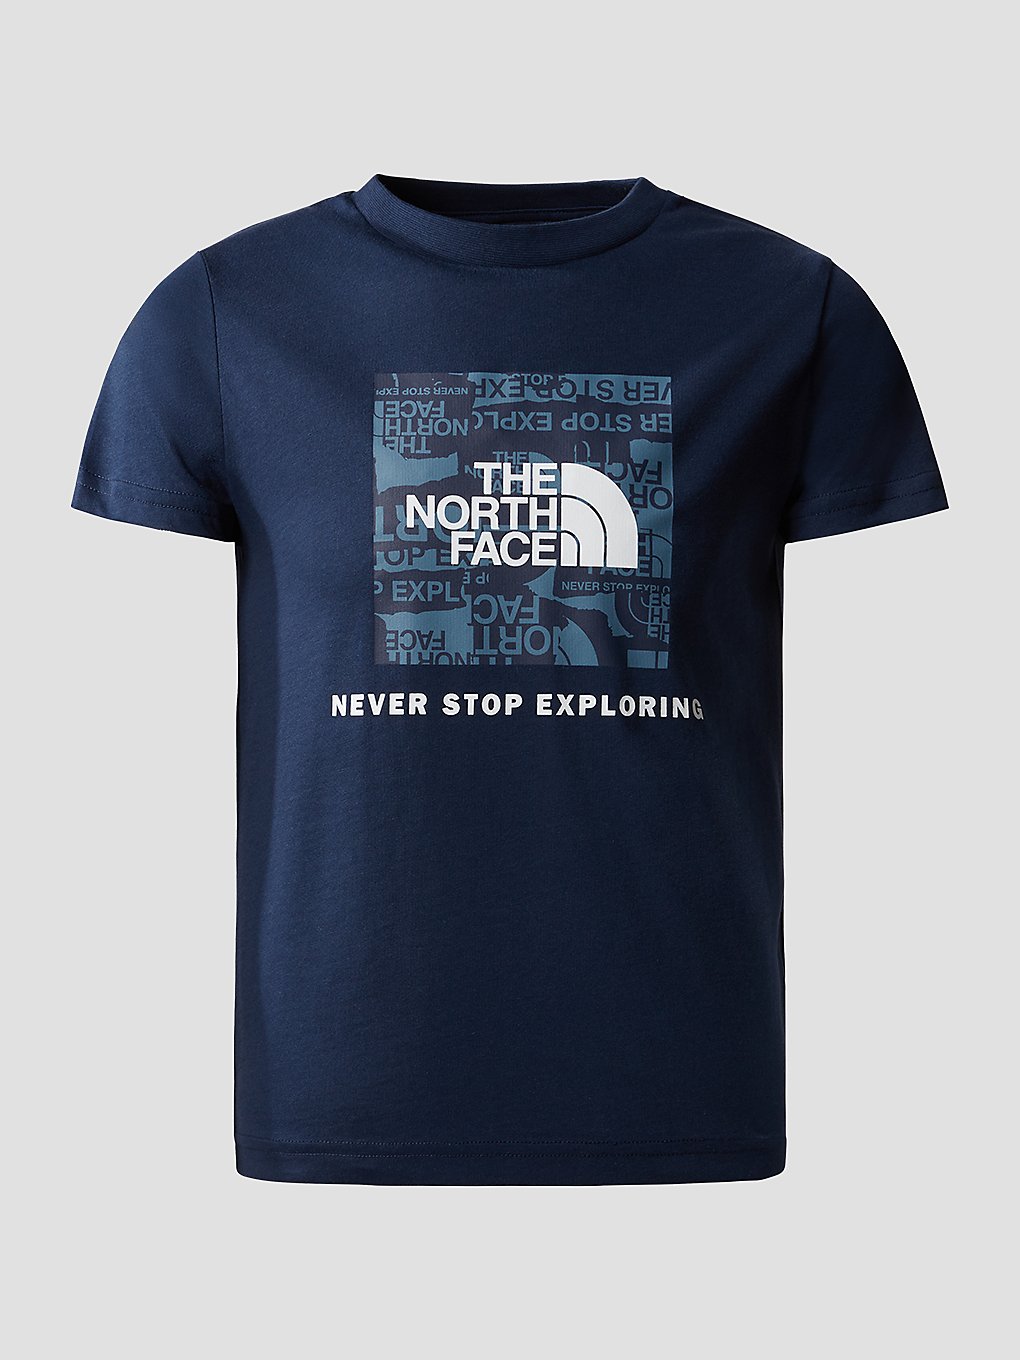 THE NORTH FACE Redbox T-Shirt summit navy kaufen